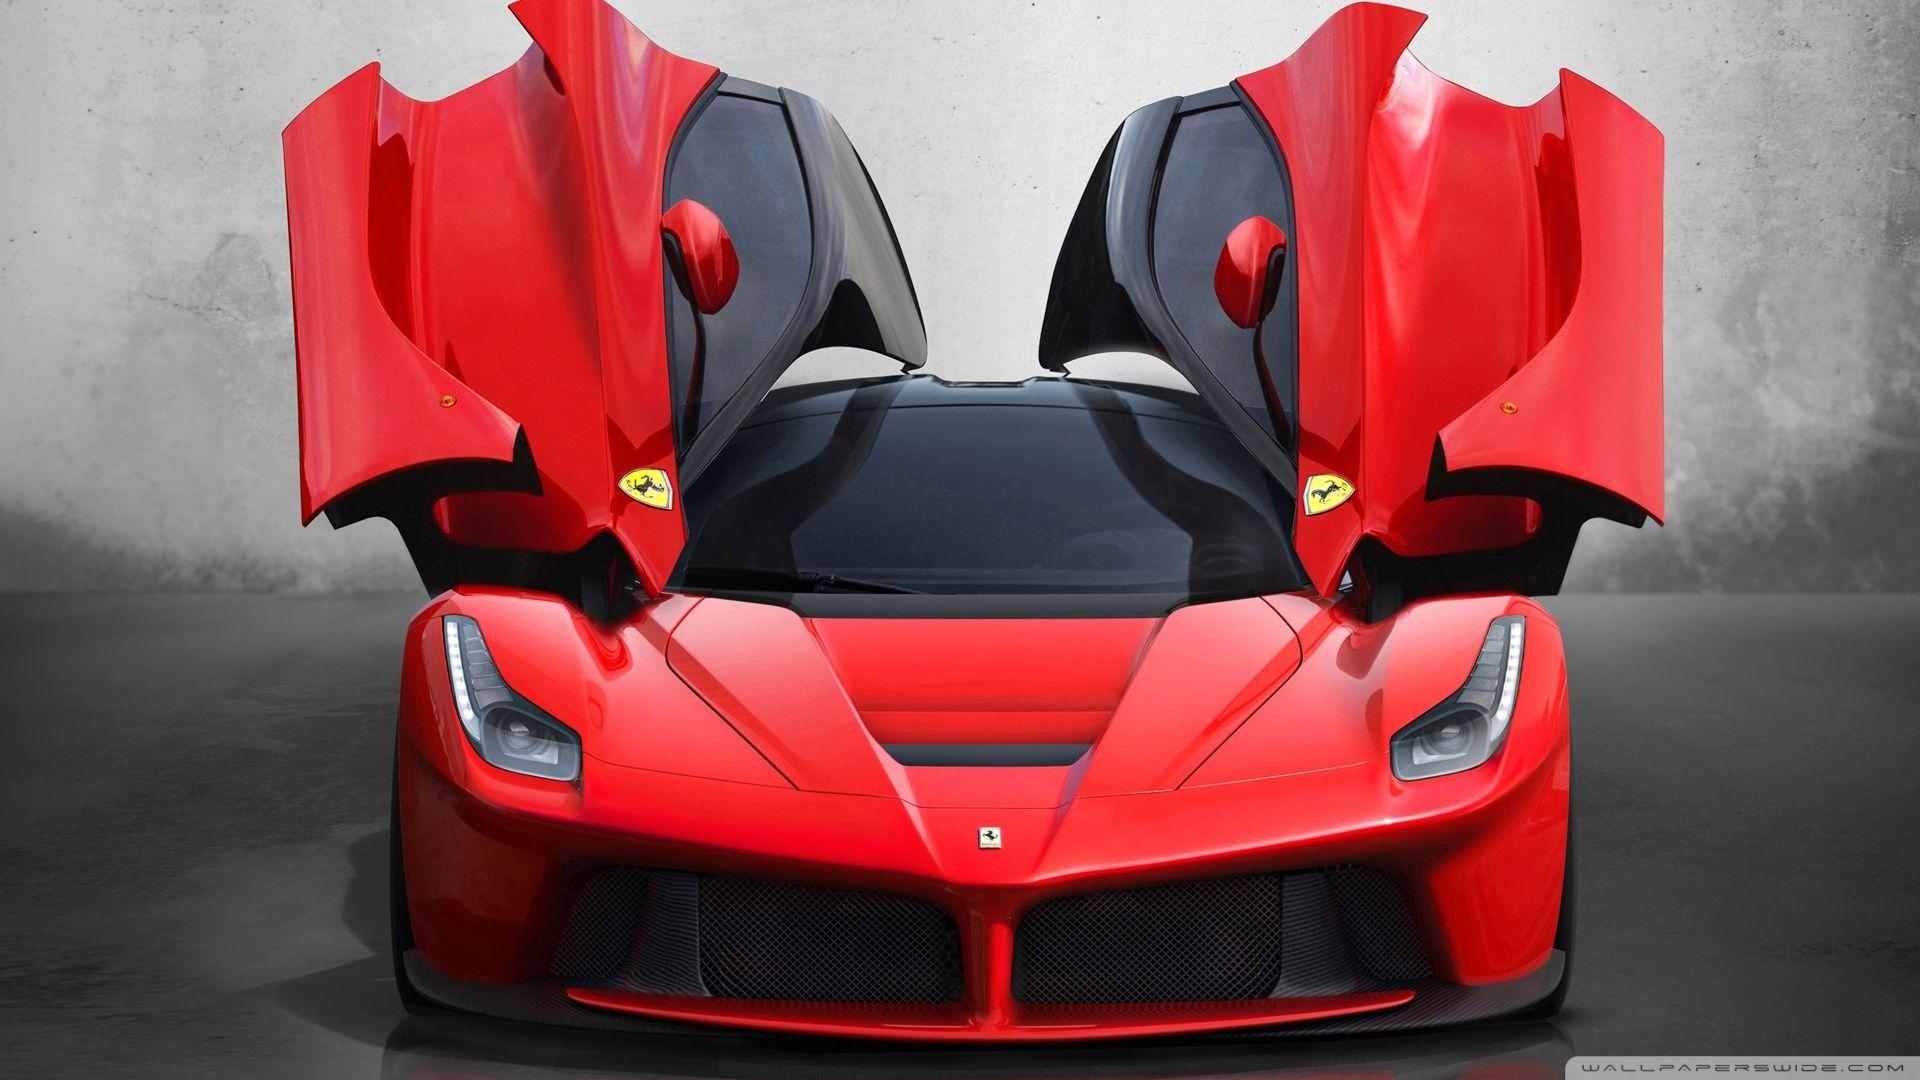 HD Ferrari Car Wallpapers 1080p - Wallpaper Cave